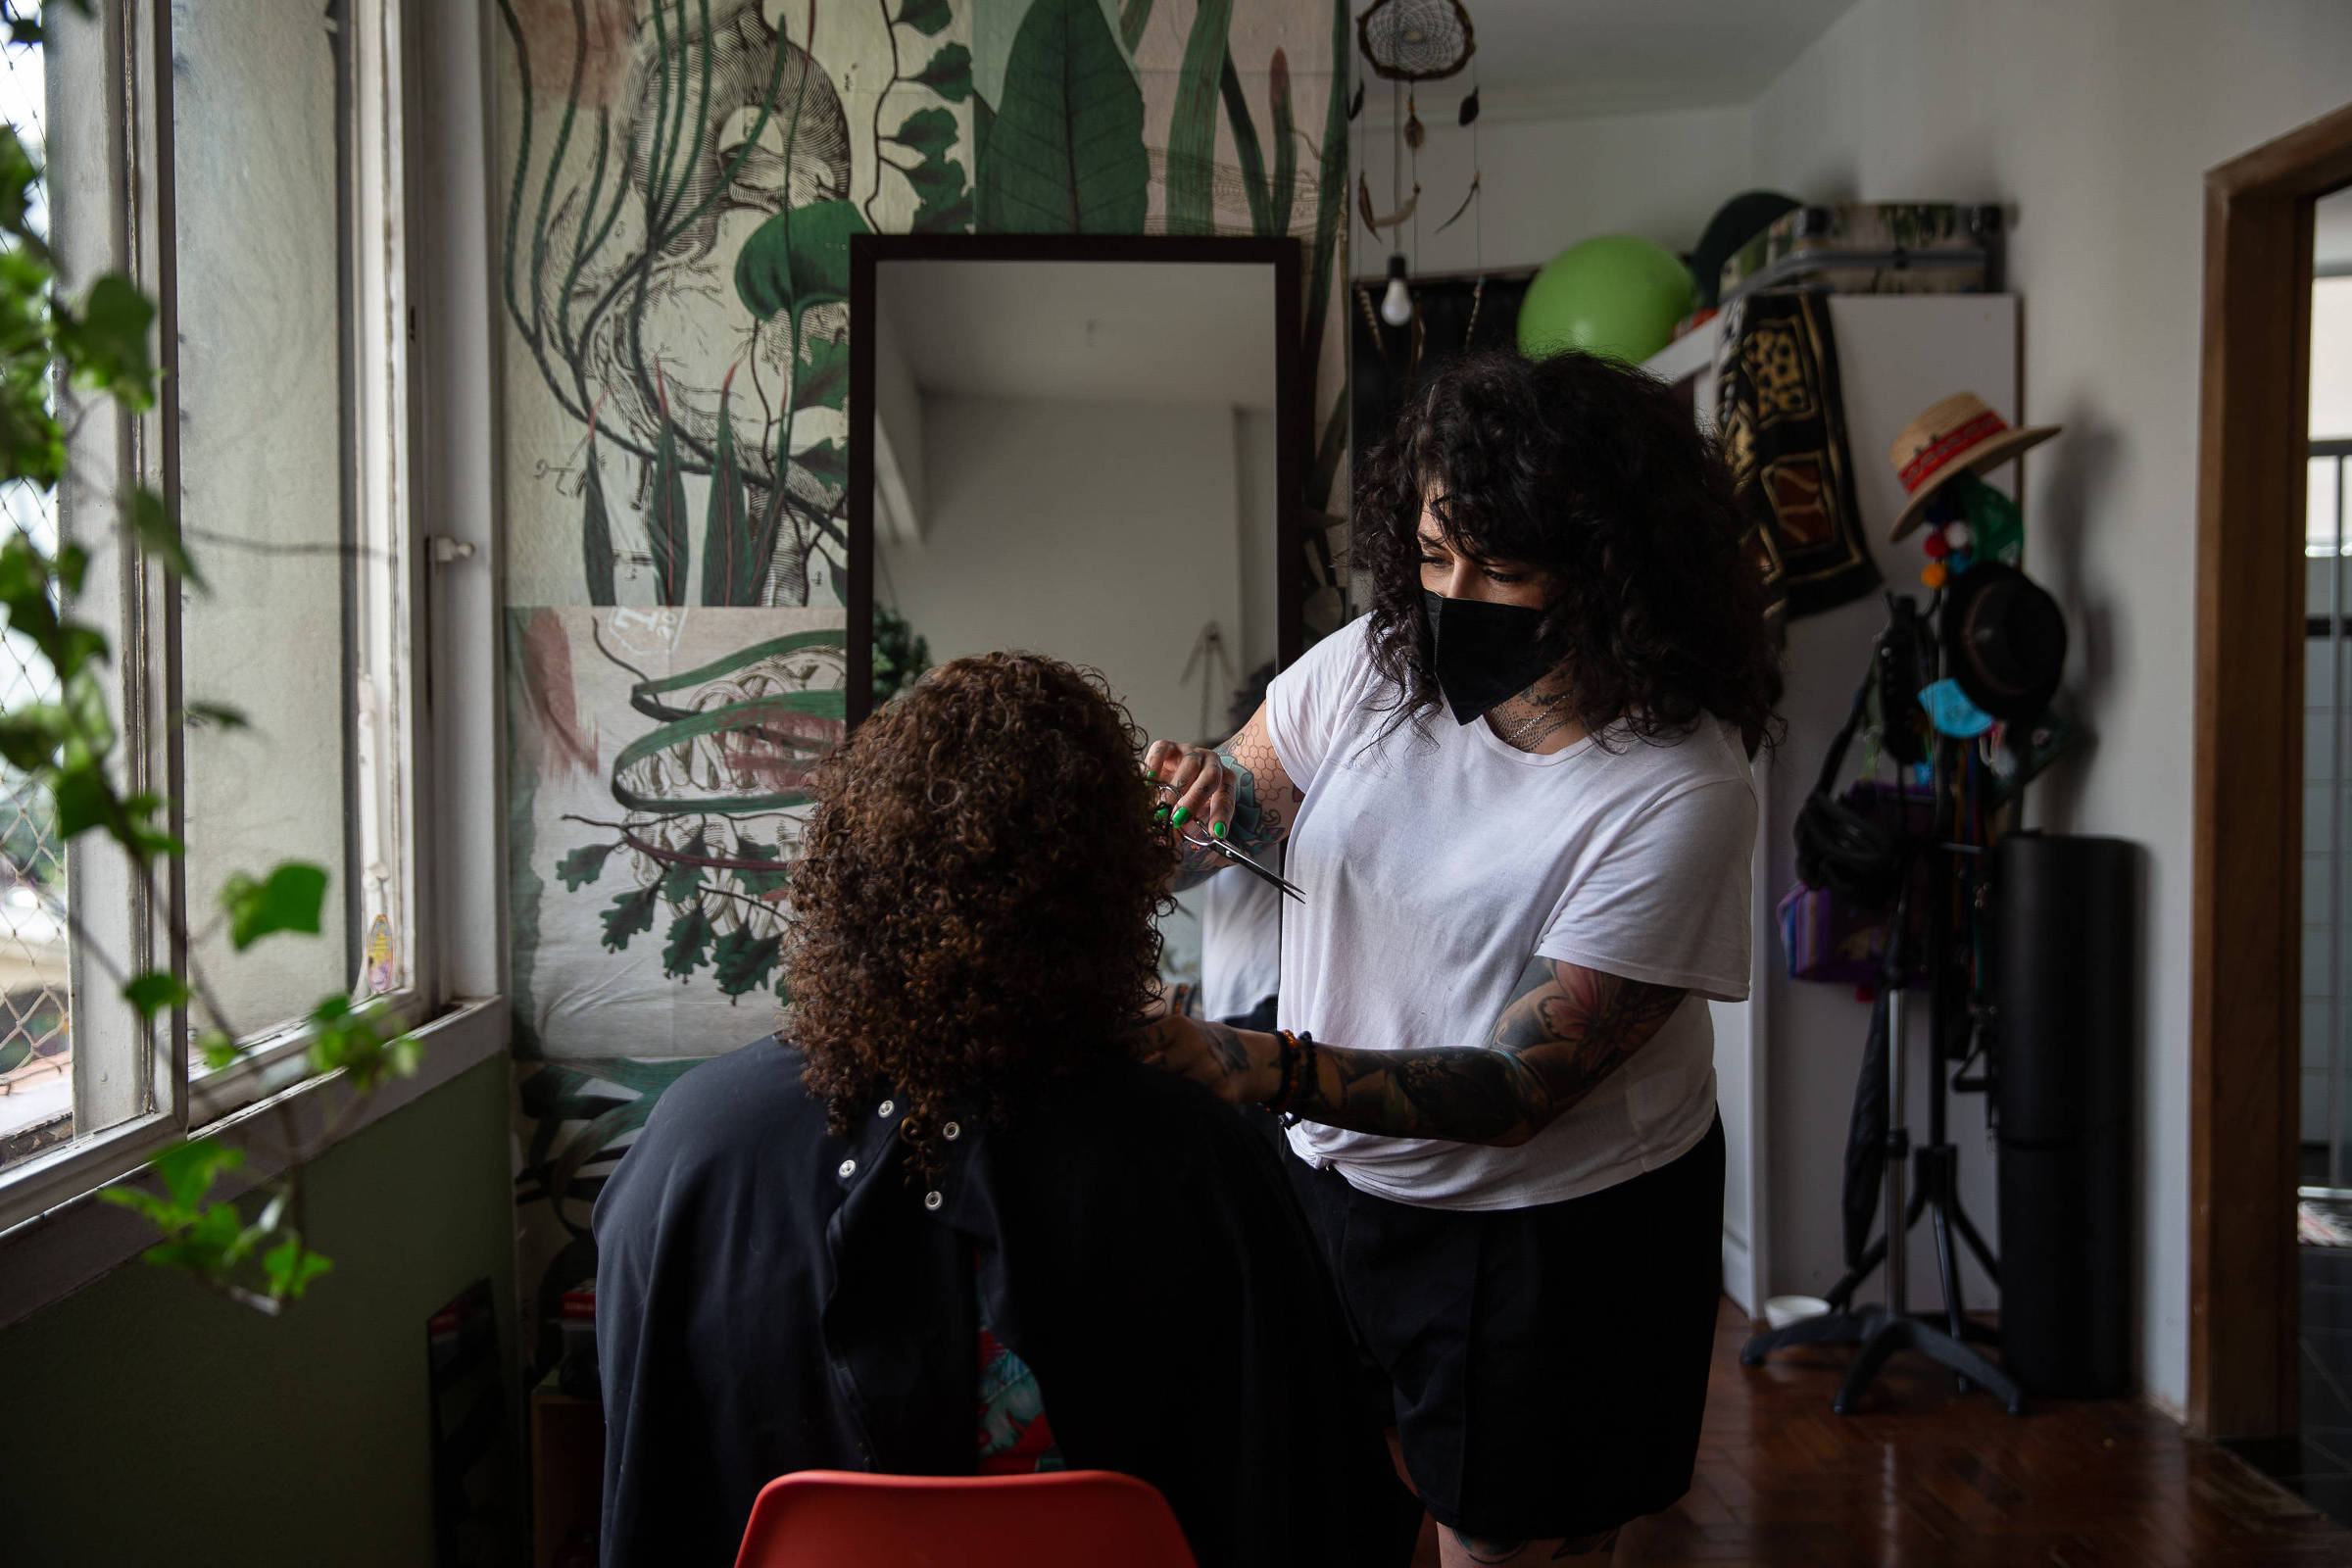 Oferece empregos de cabeleireiro Lisbon - Cabeleireiro ※2023 TOP